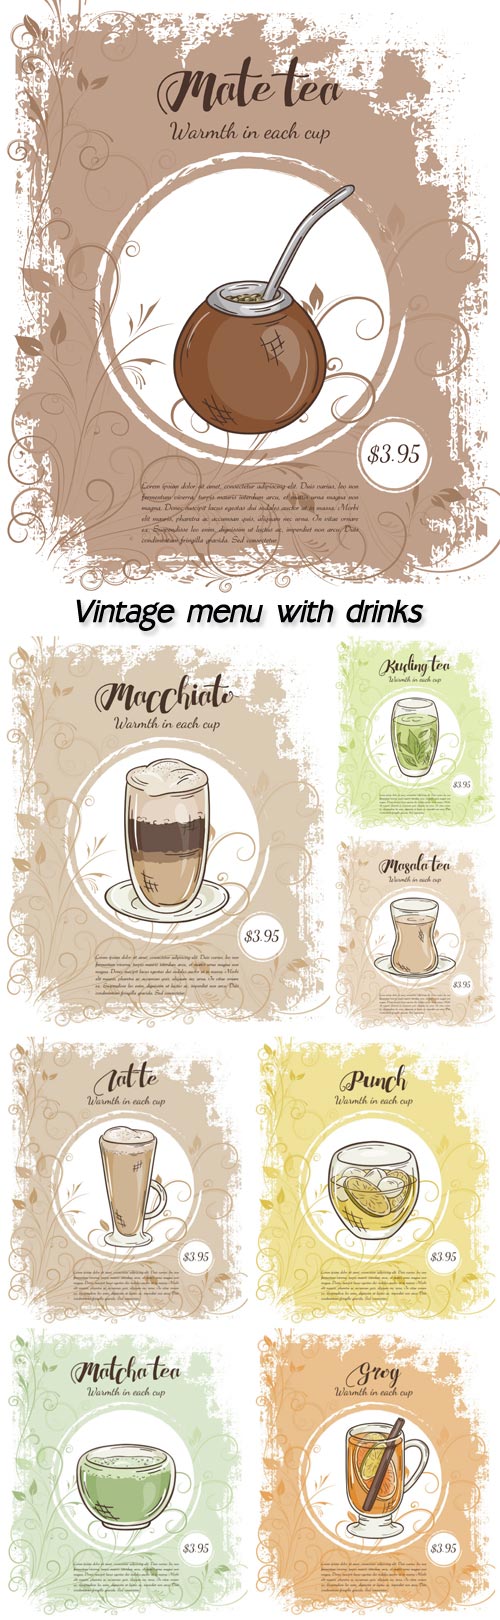 Vintage menu with drinks